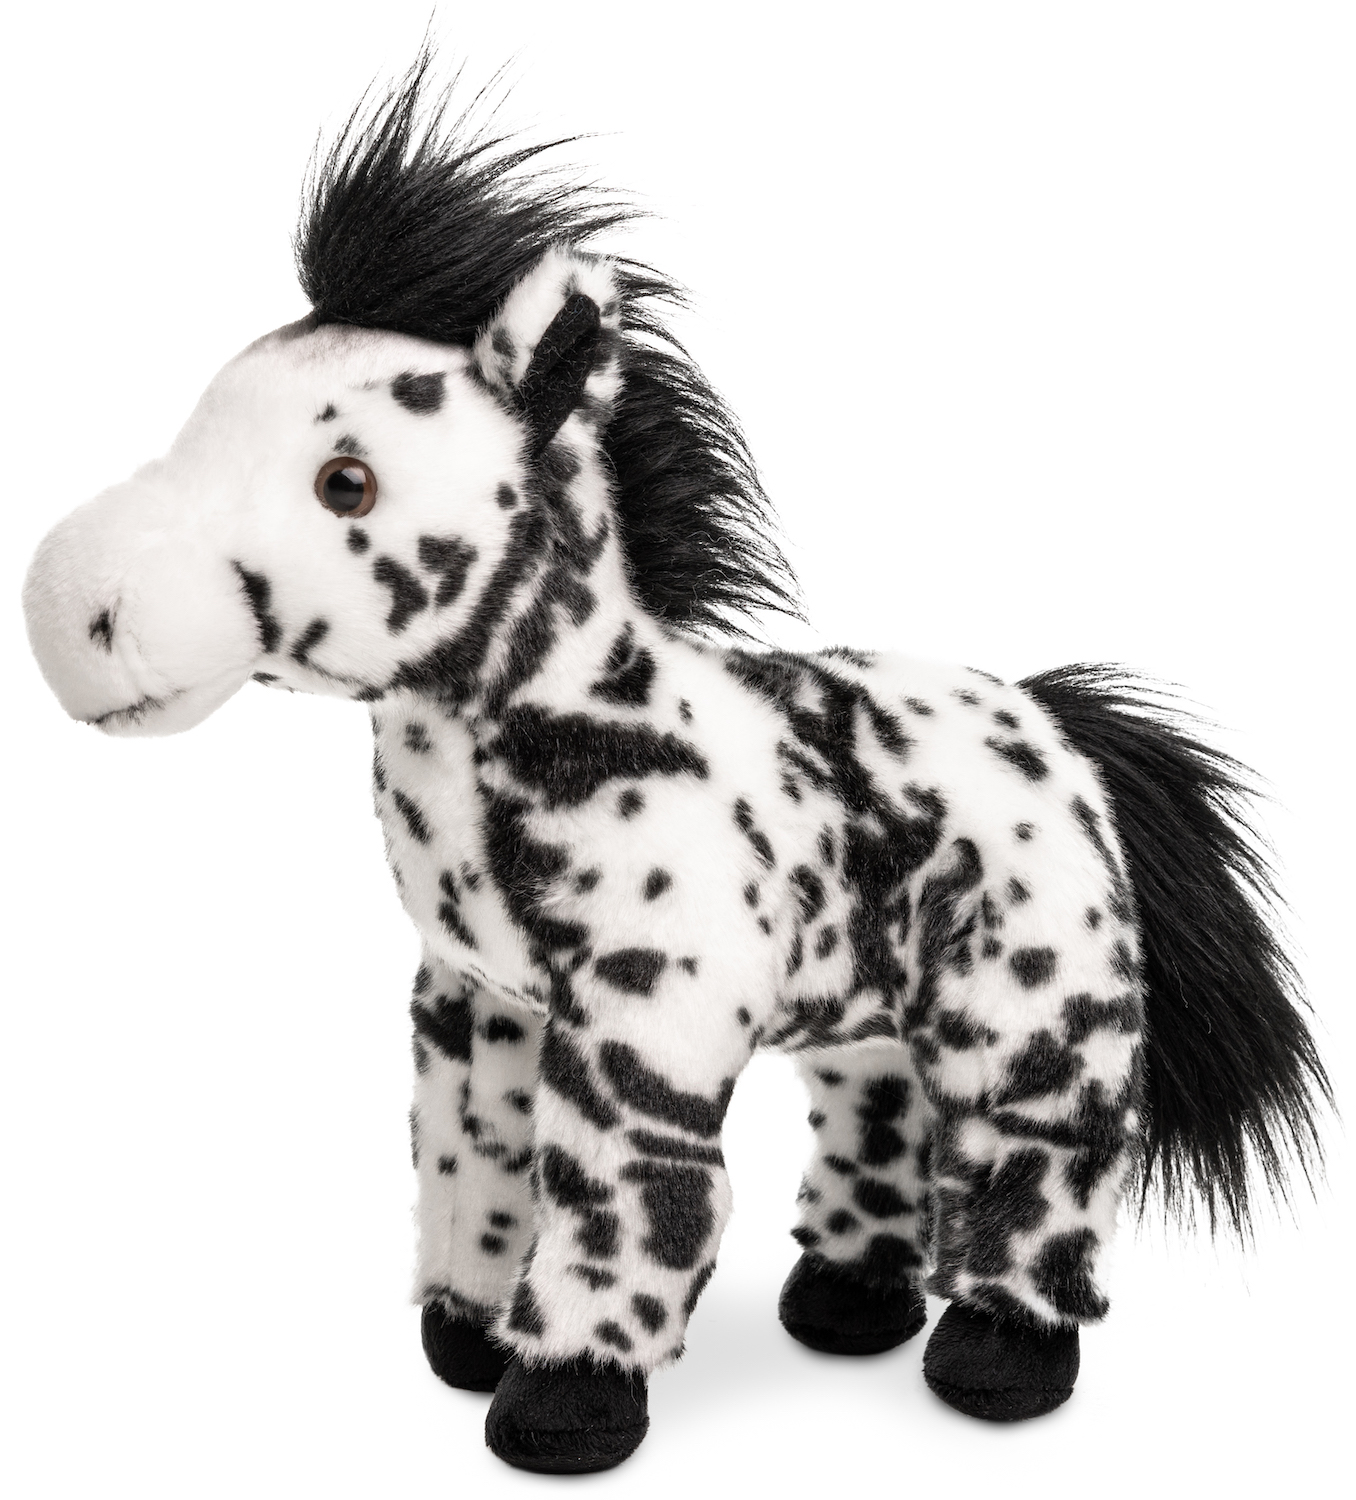 Pferd weiß mit schwarzen Flecken, stehend - 28 cm (Höhe)